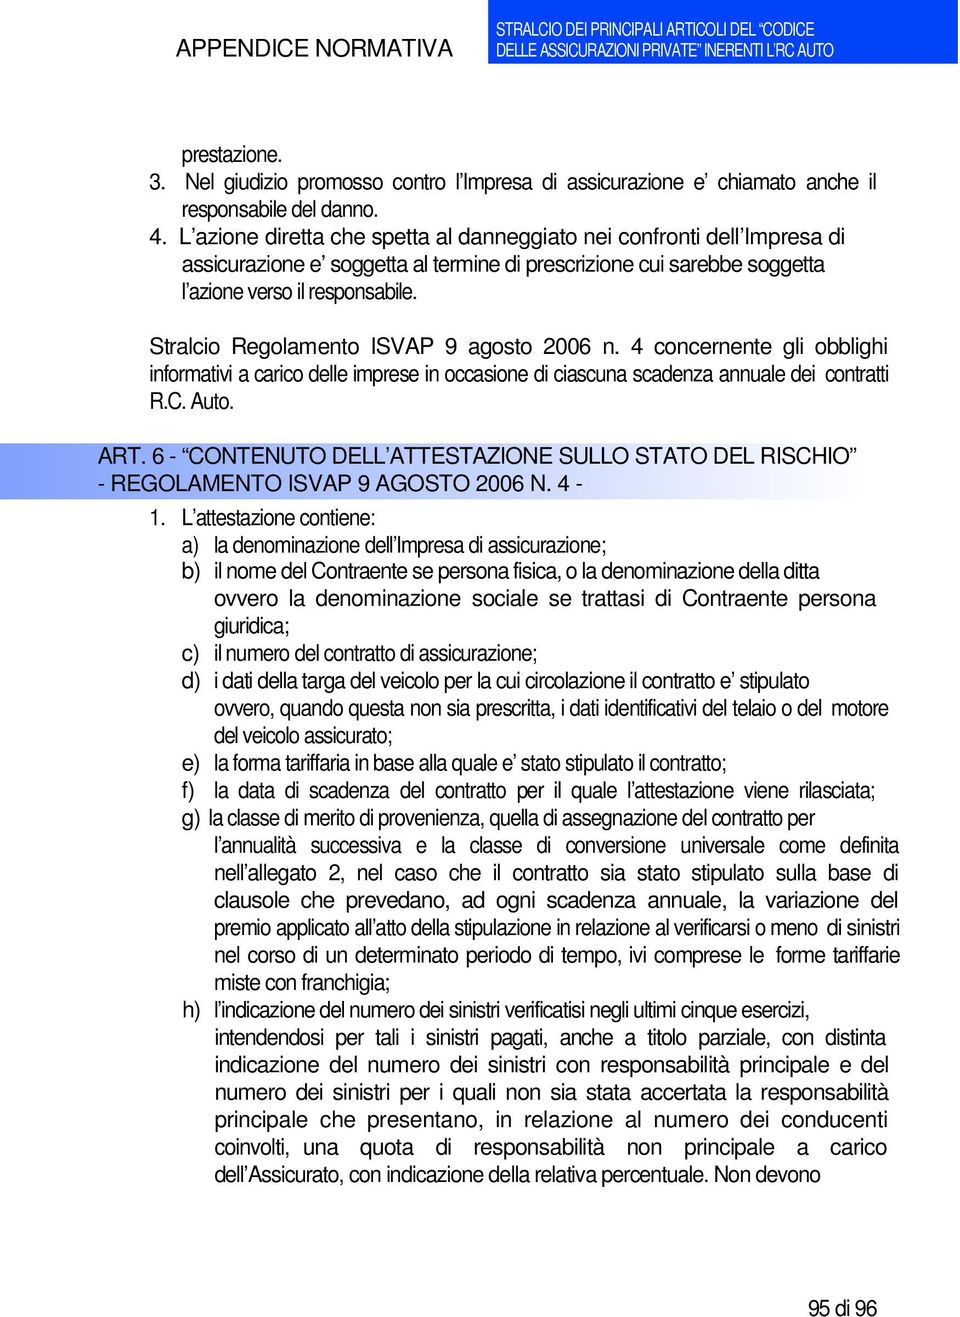 Stralcio Regolamento ISVAP 9 agosto 2006 n. 4 concernente gli obblighi informativi a carico delle imprese in occasione di ciascuna scadenza annuale dei contratti R.C. Auto. ART.